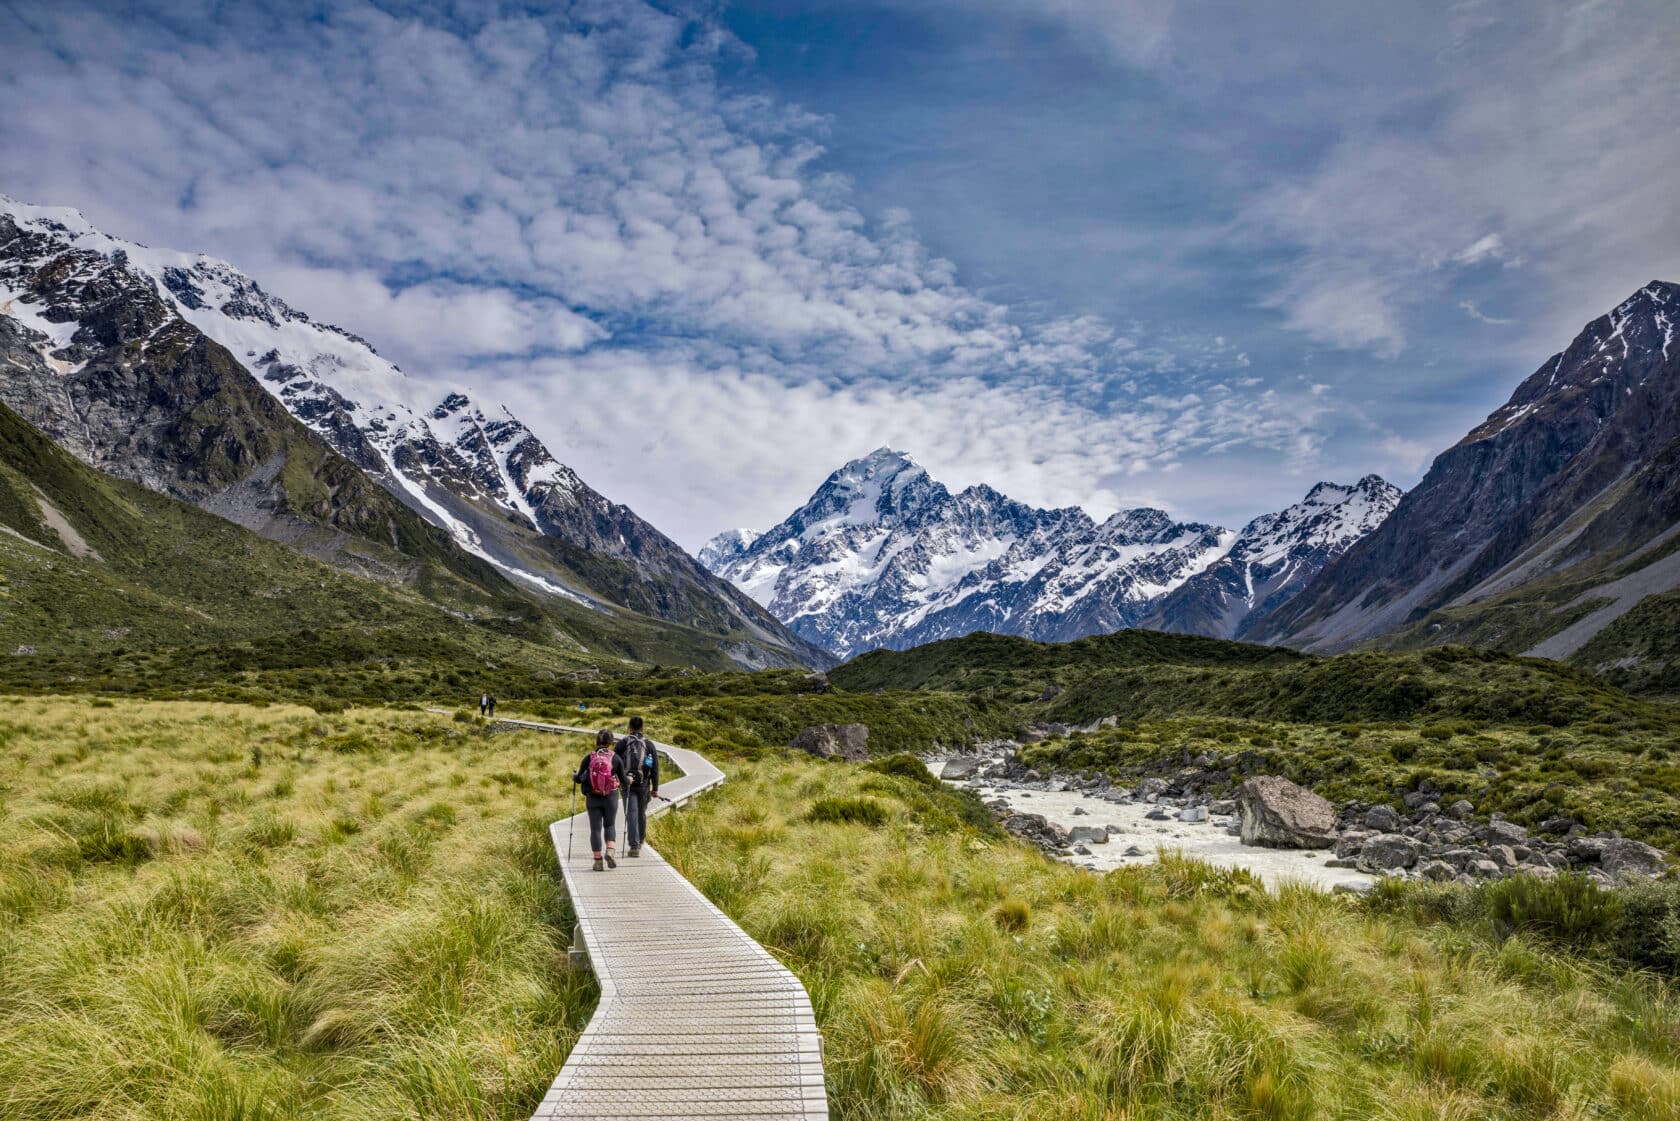 Aoraki / Mount Cook mountain in New Zealand